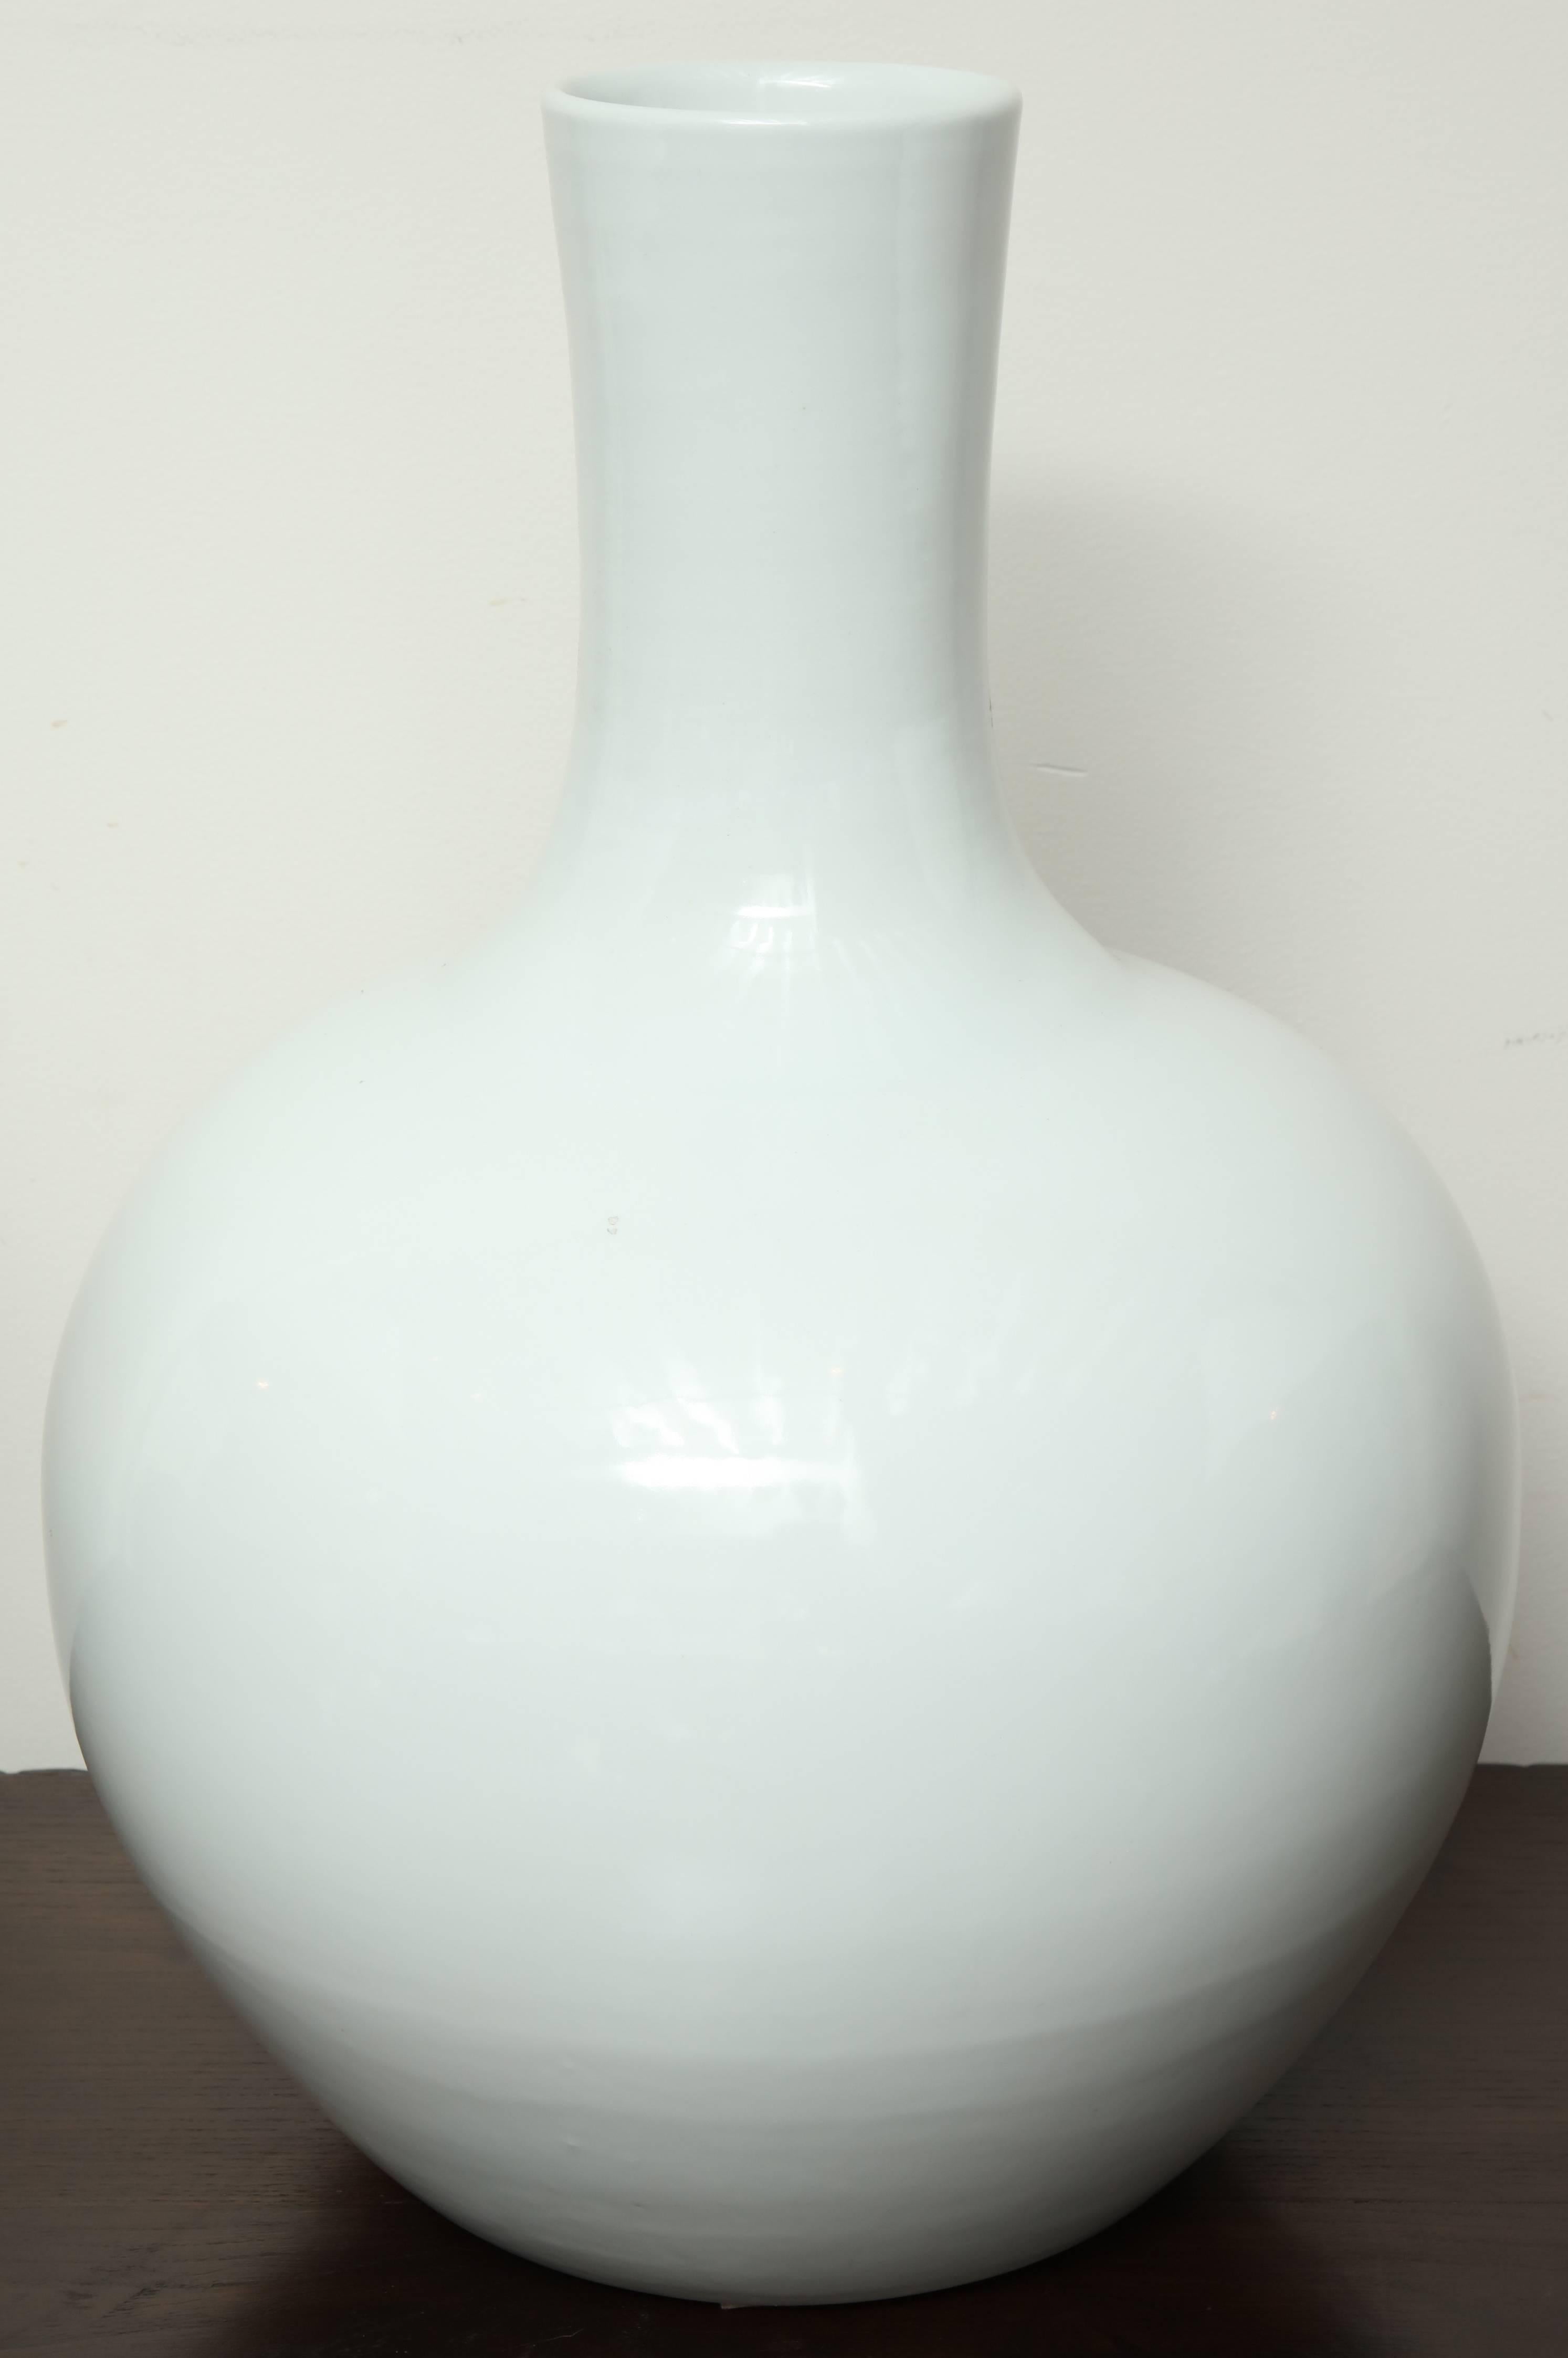 Contemporary white ceramic vase.